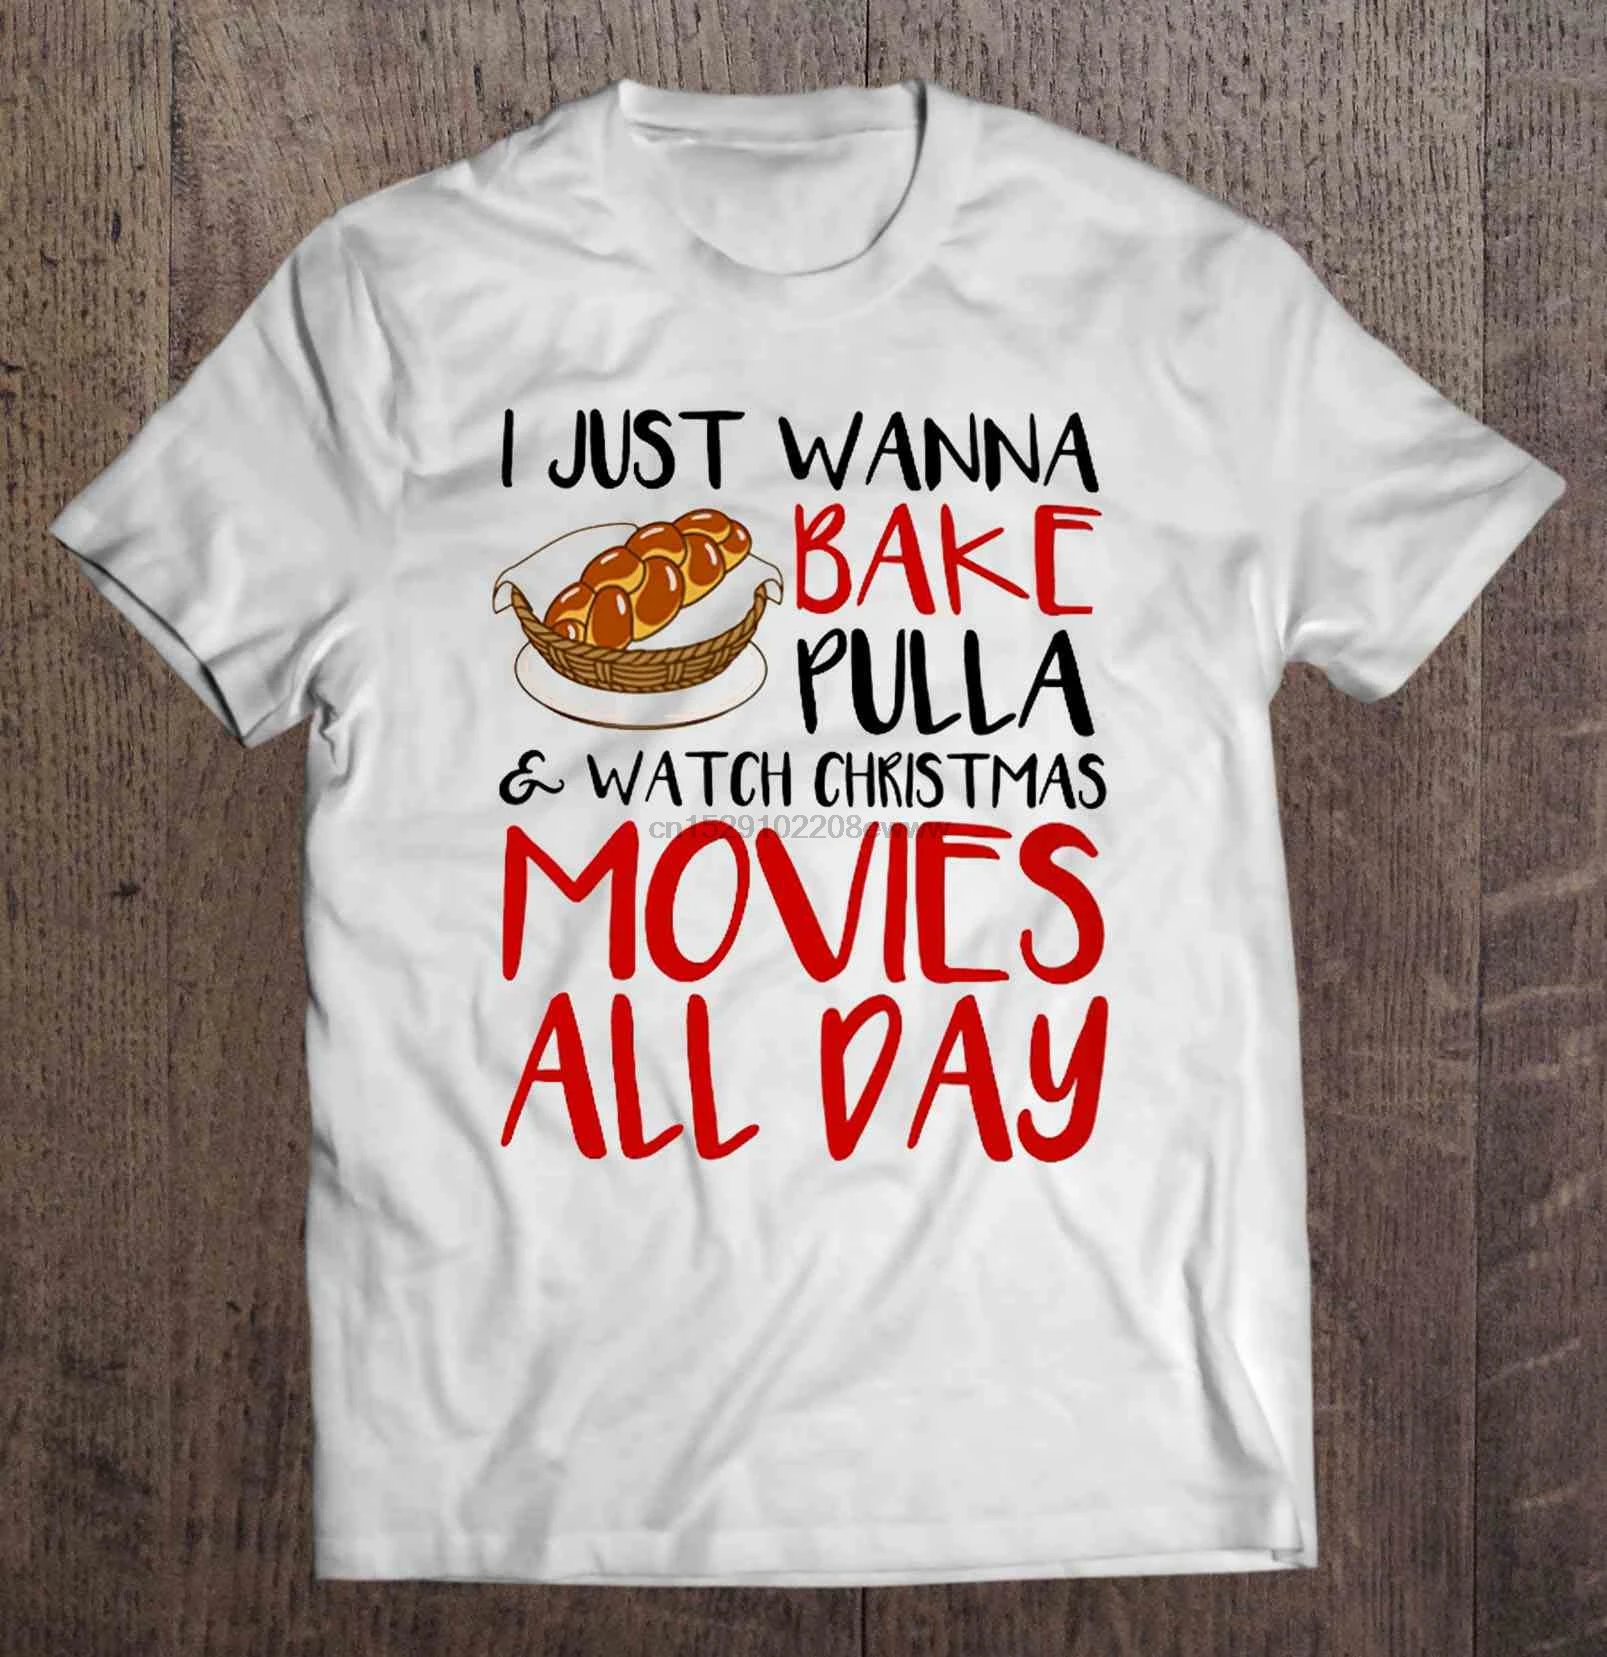 Мужская футболка I Just want Bake Pulla & Смотреть Рождественские фильмы на весь день